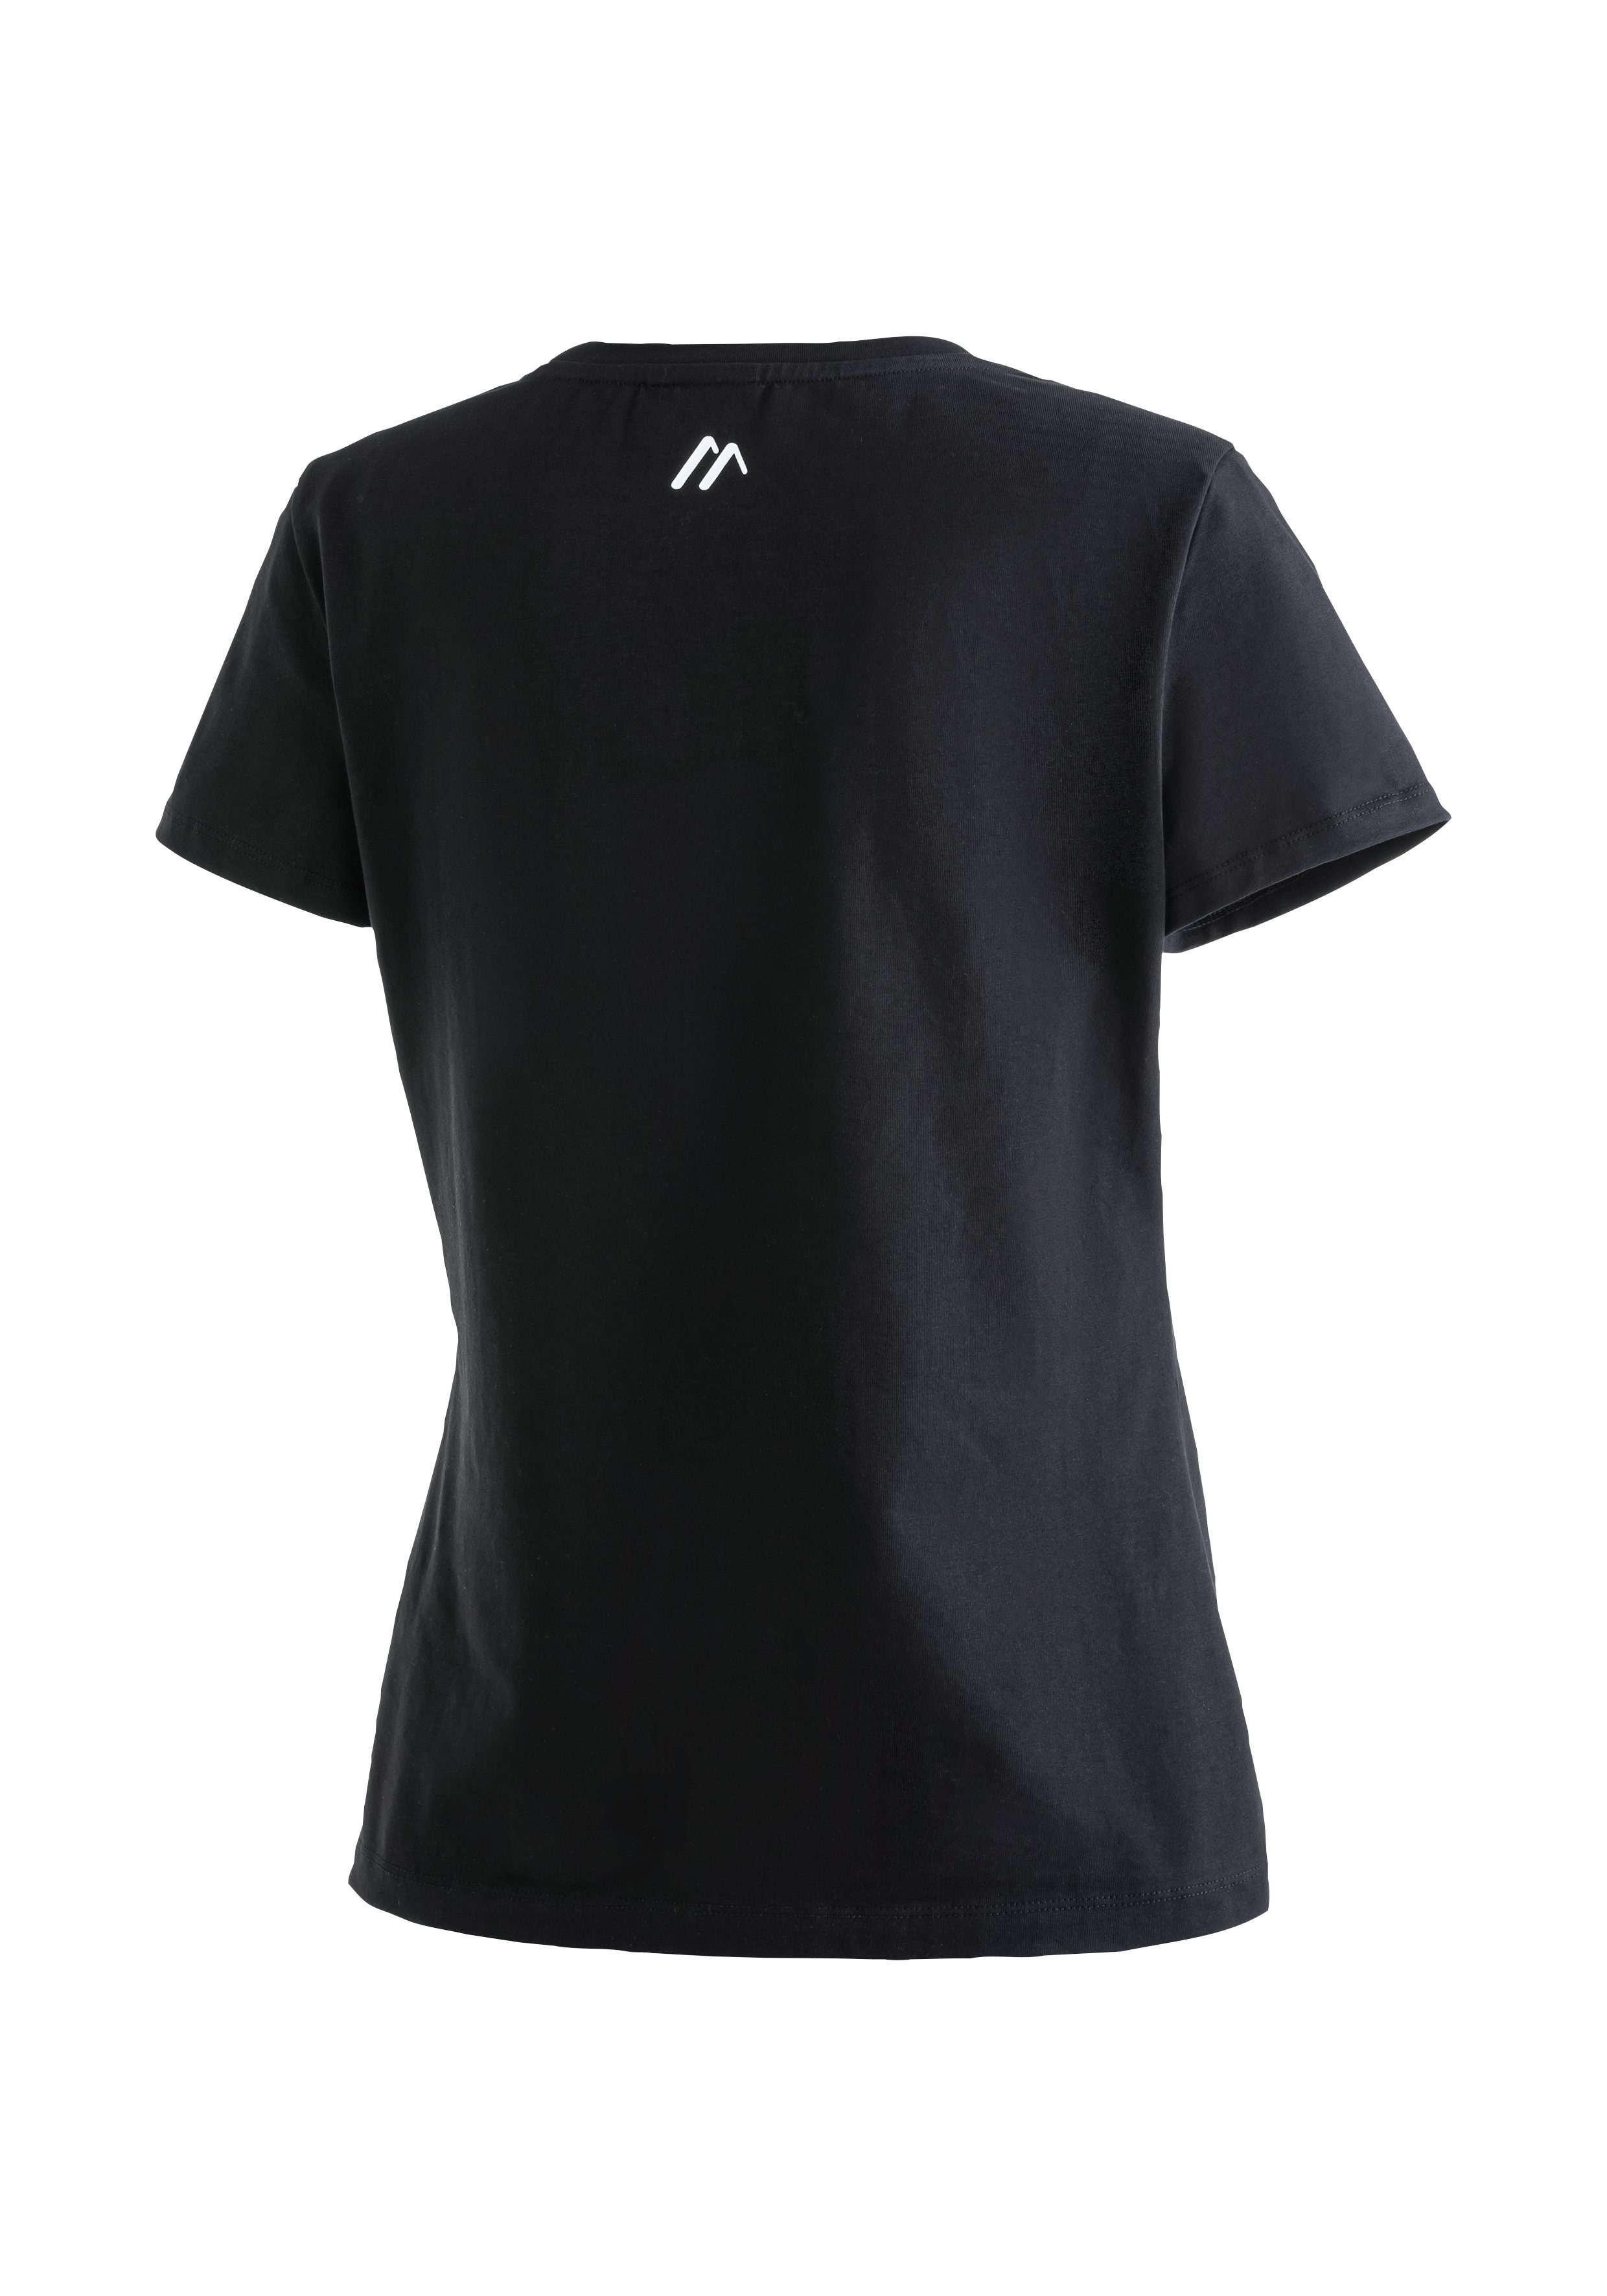 Maier Sports Funktionsshirt MS Tee aus Material schwarz elastischem W Vielseitiges Rundhalsshirt